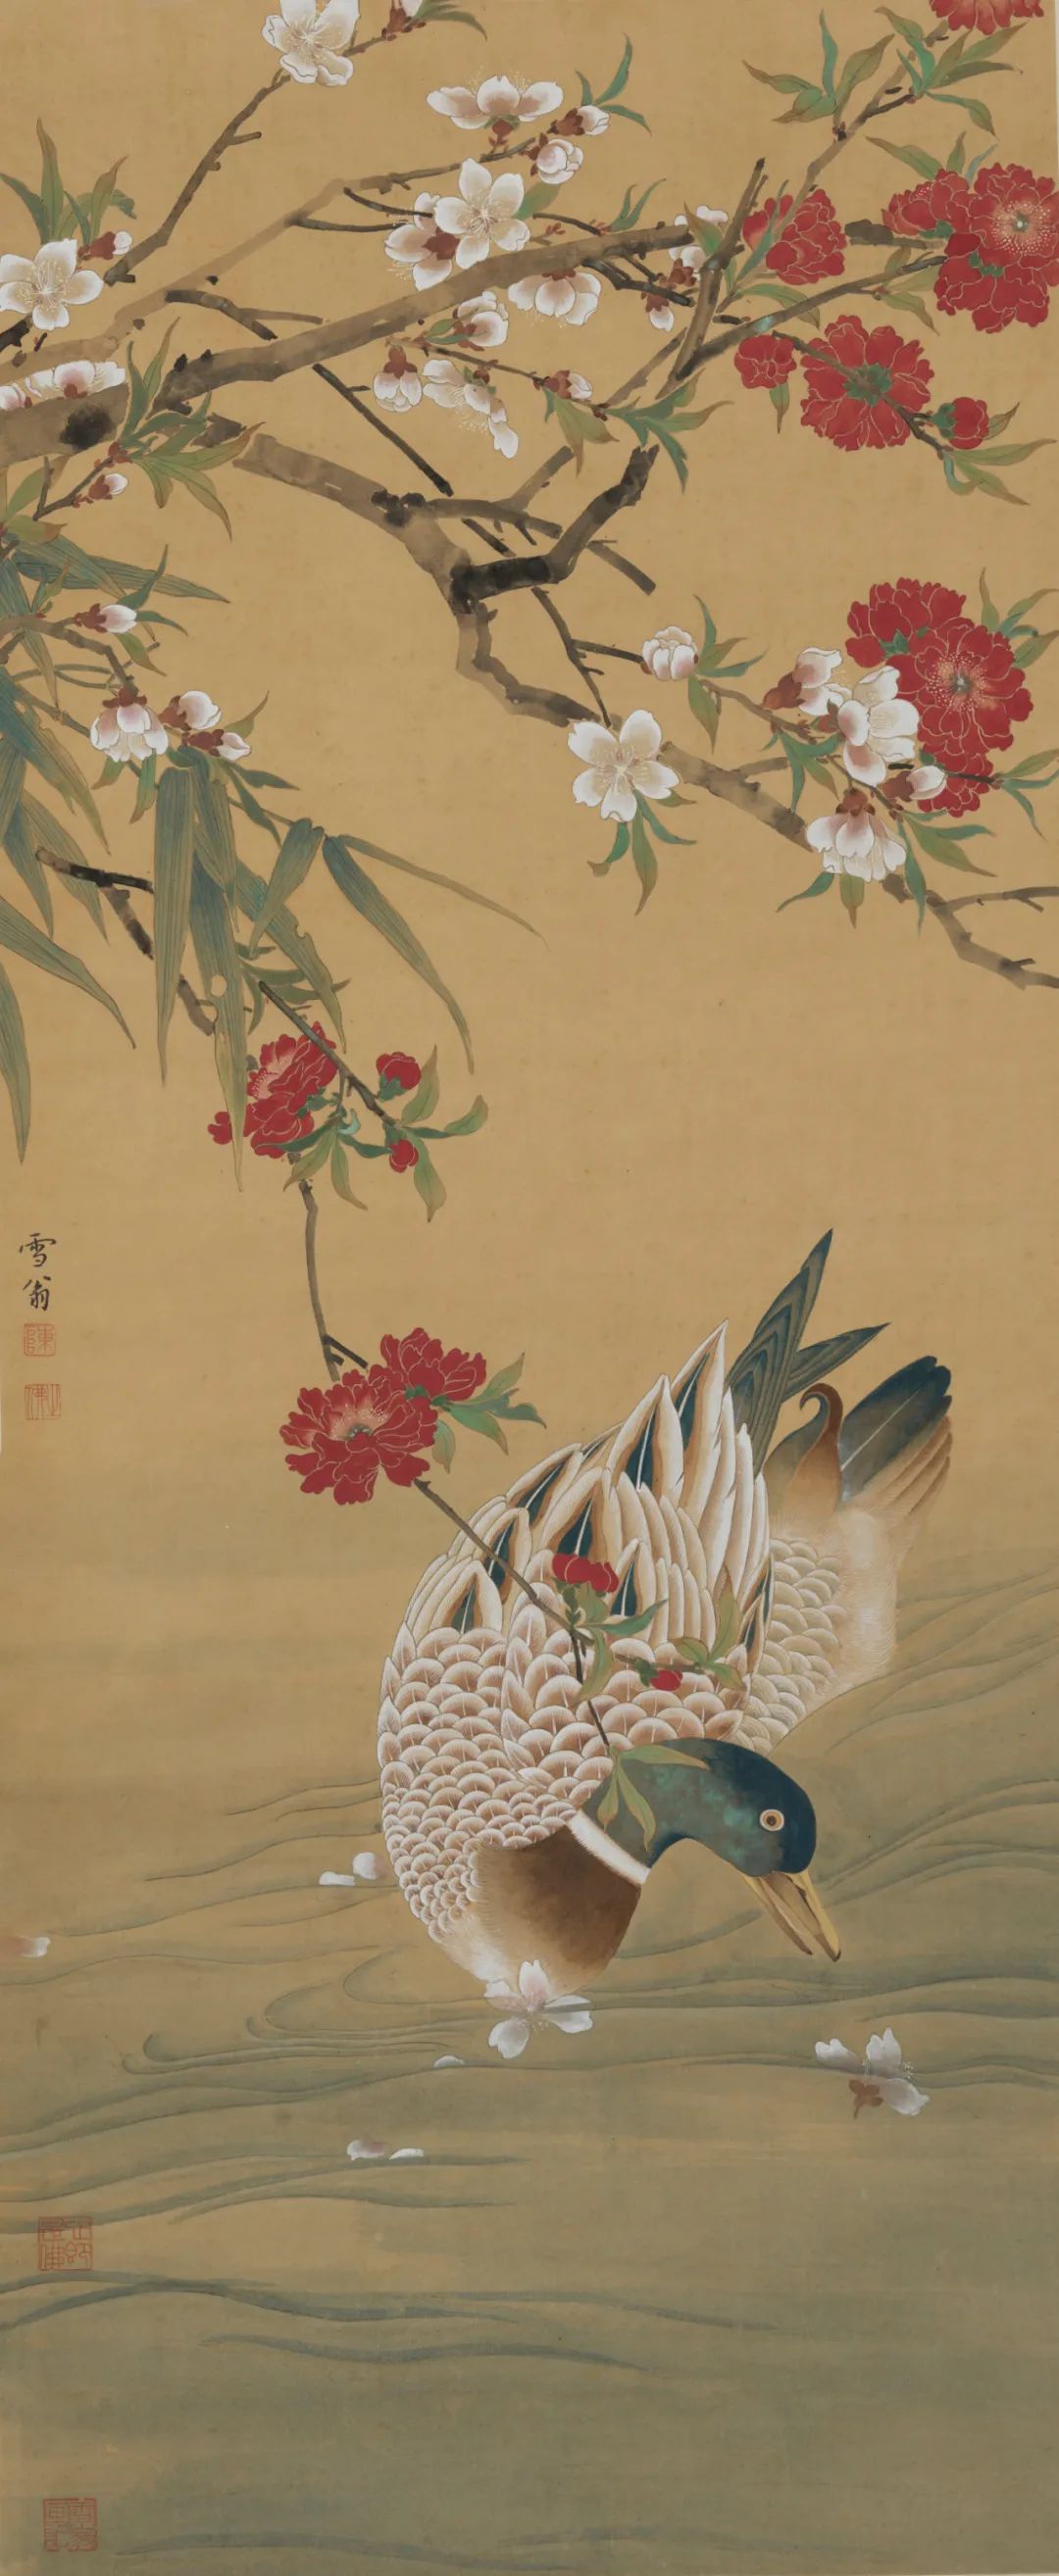 《春江水暖》 陈之佛 中国画 98.6×41cm 年代不详 中国美术馆藏